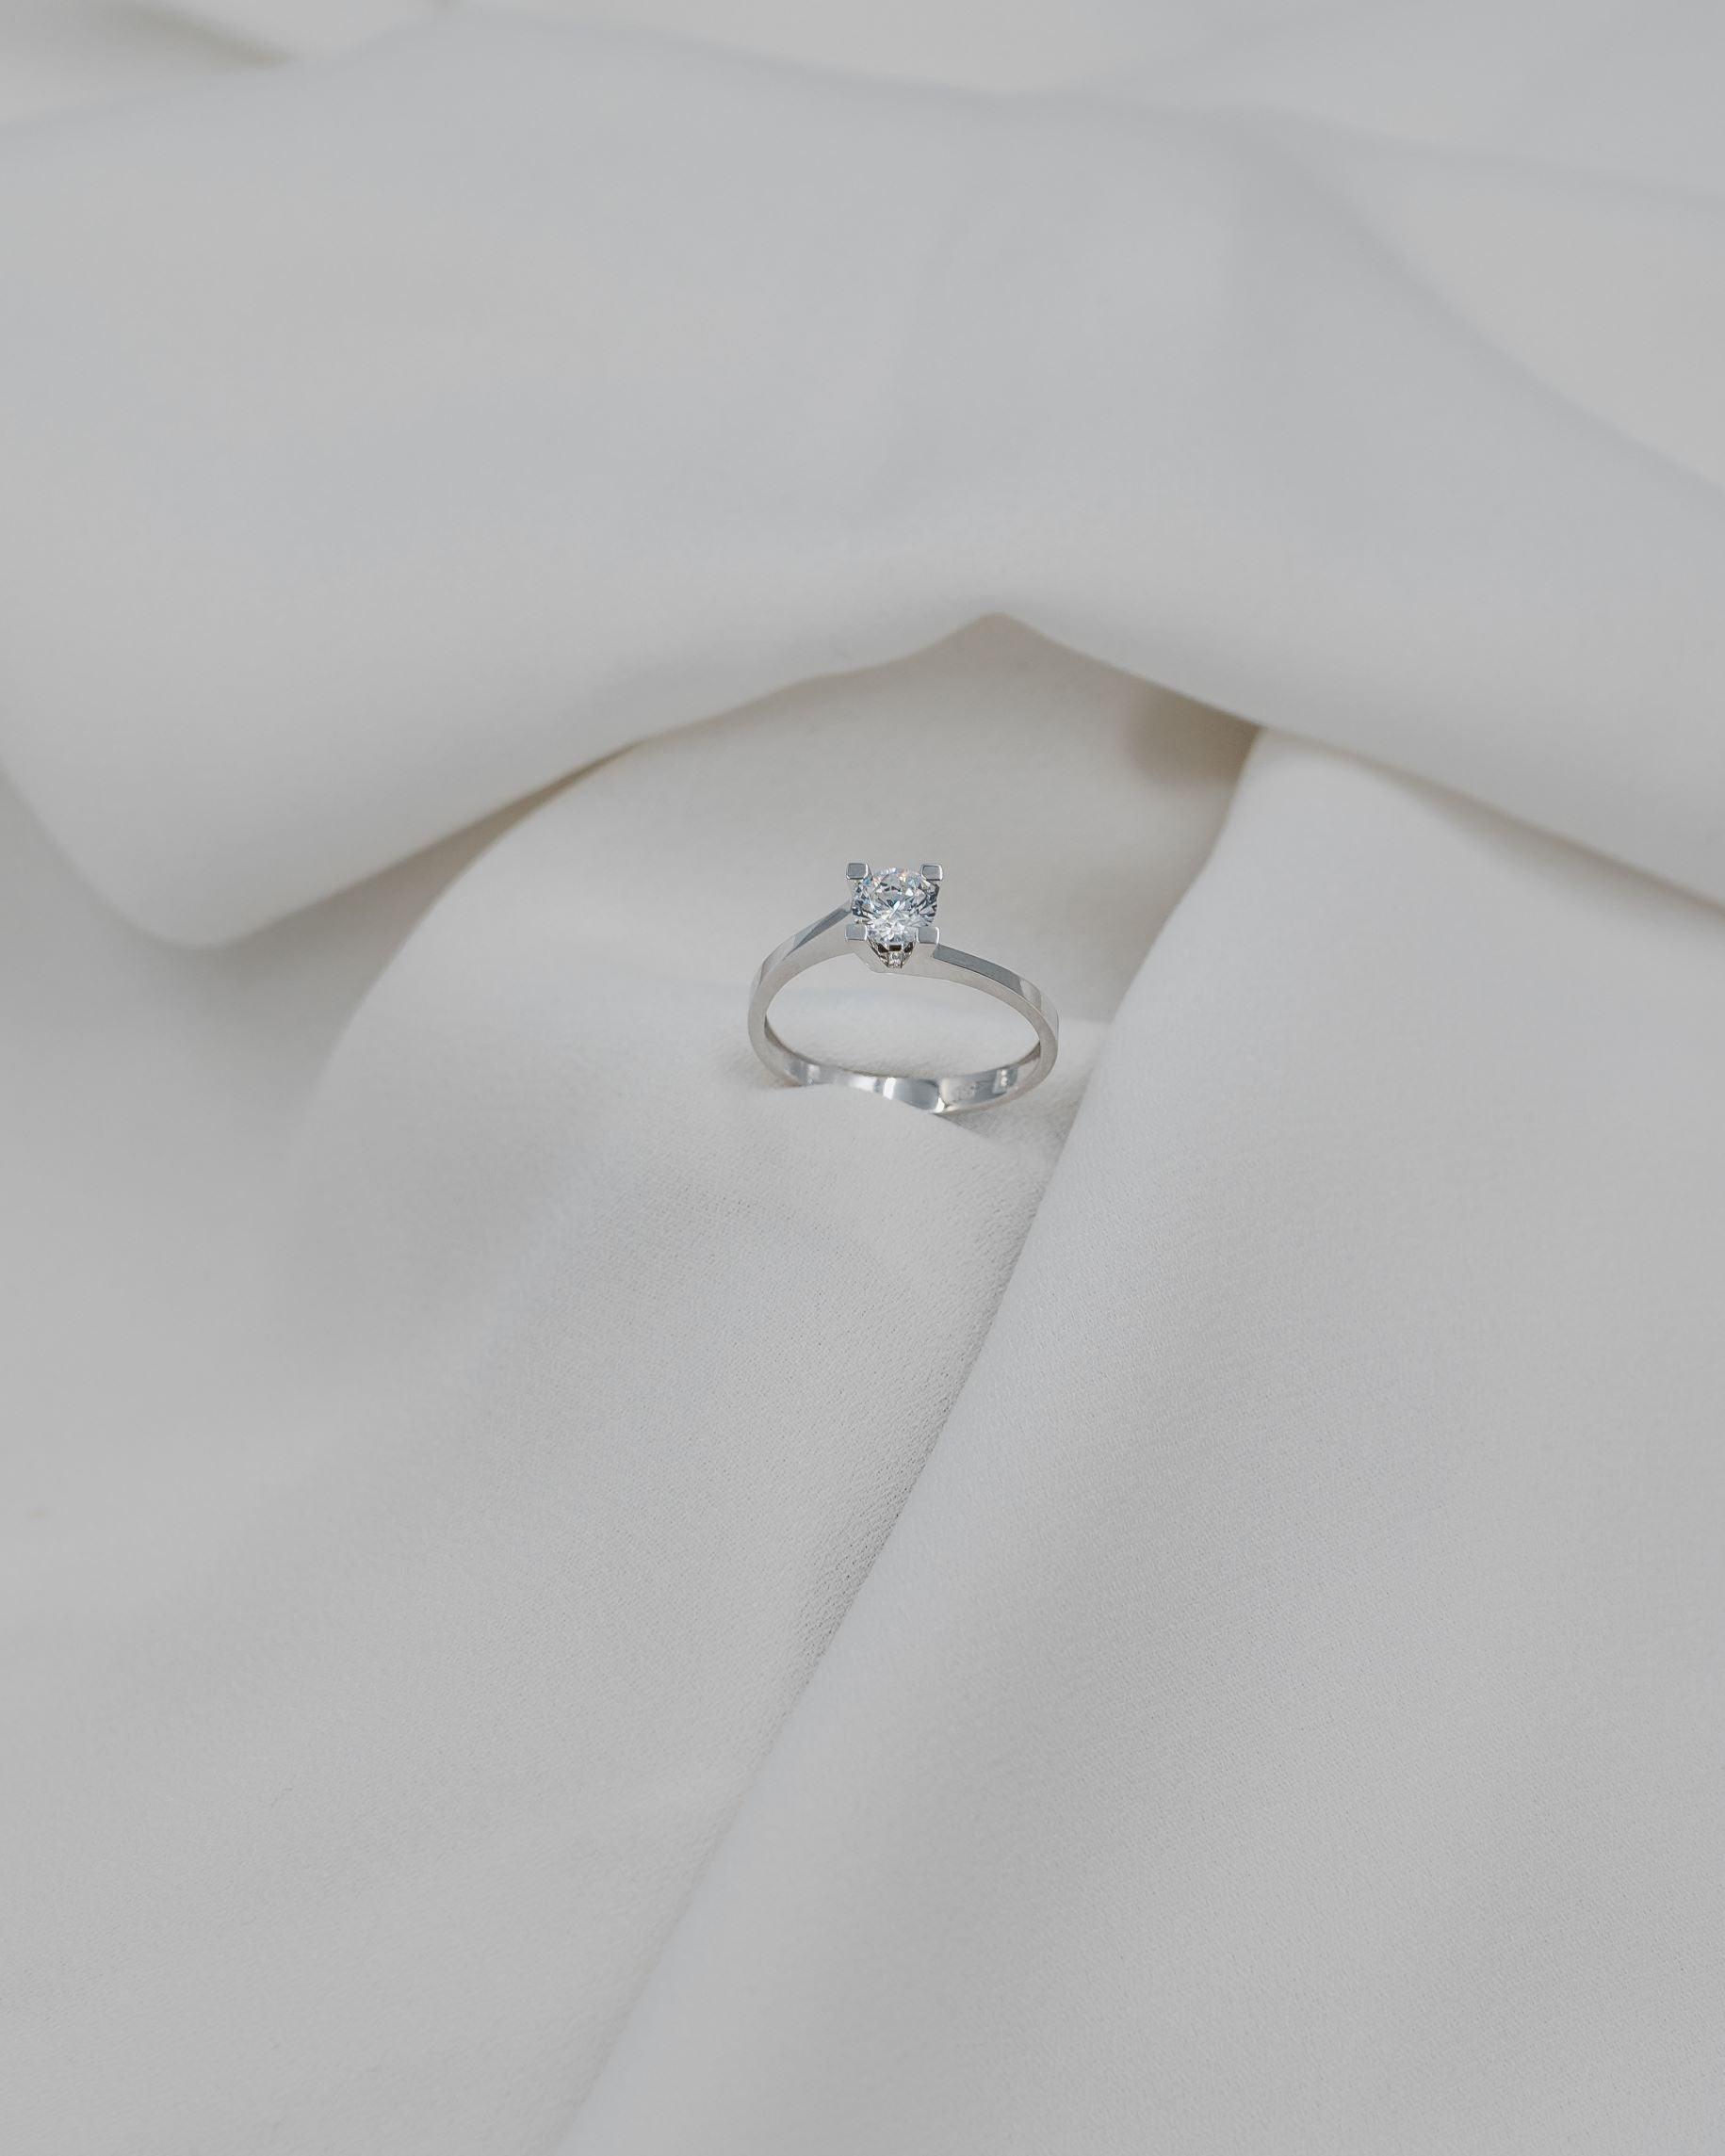 λευκόχρυσο μονόπετρο με διαμάντι σχήματος φλόγας σε λευκό σεντόνι